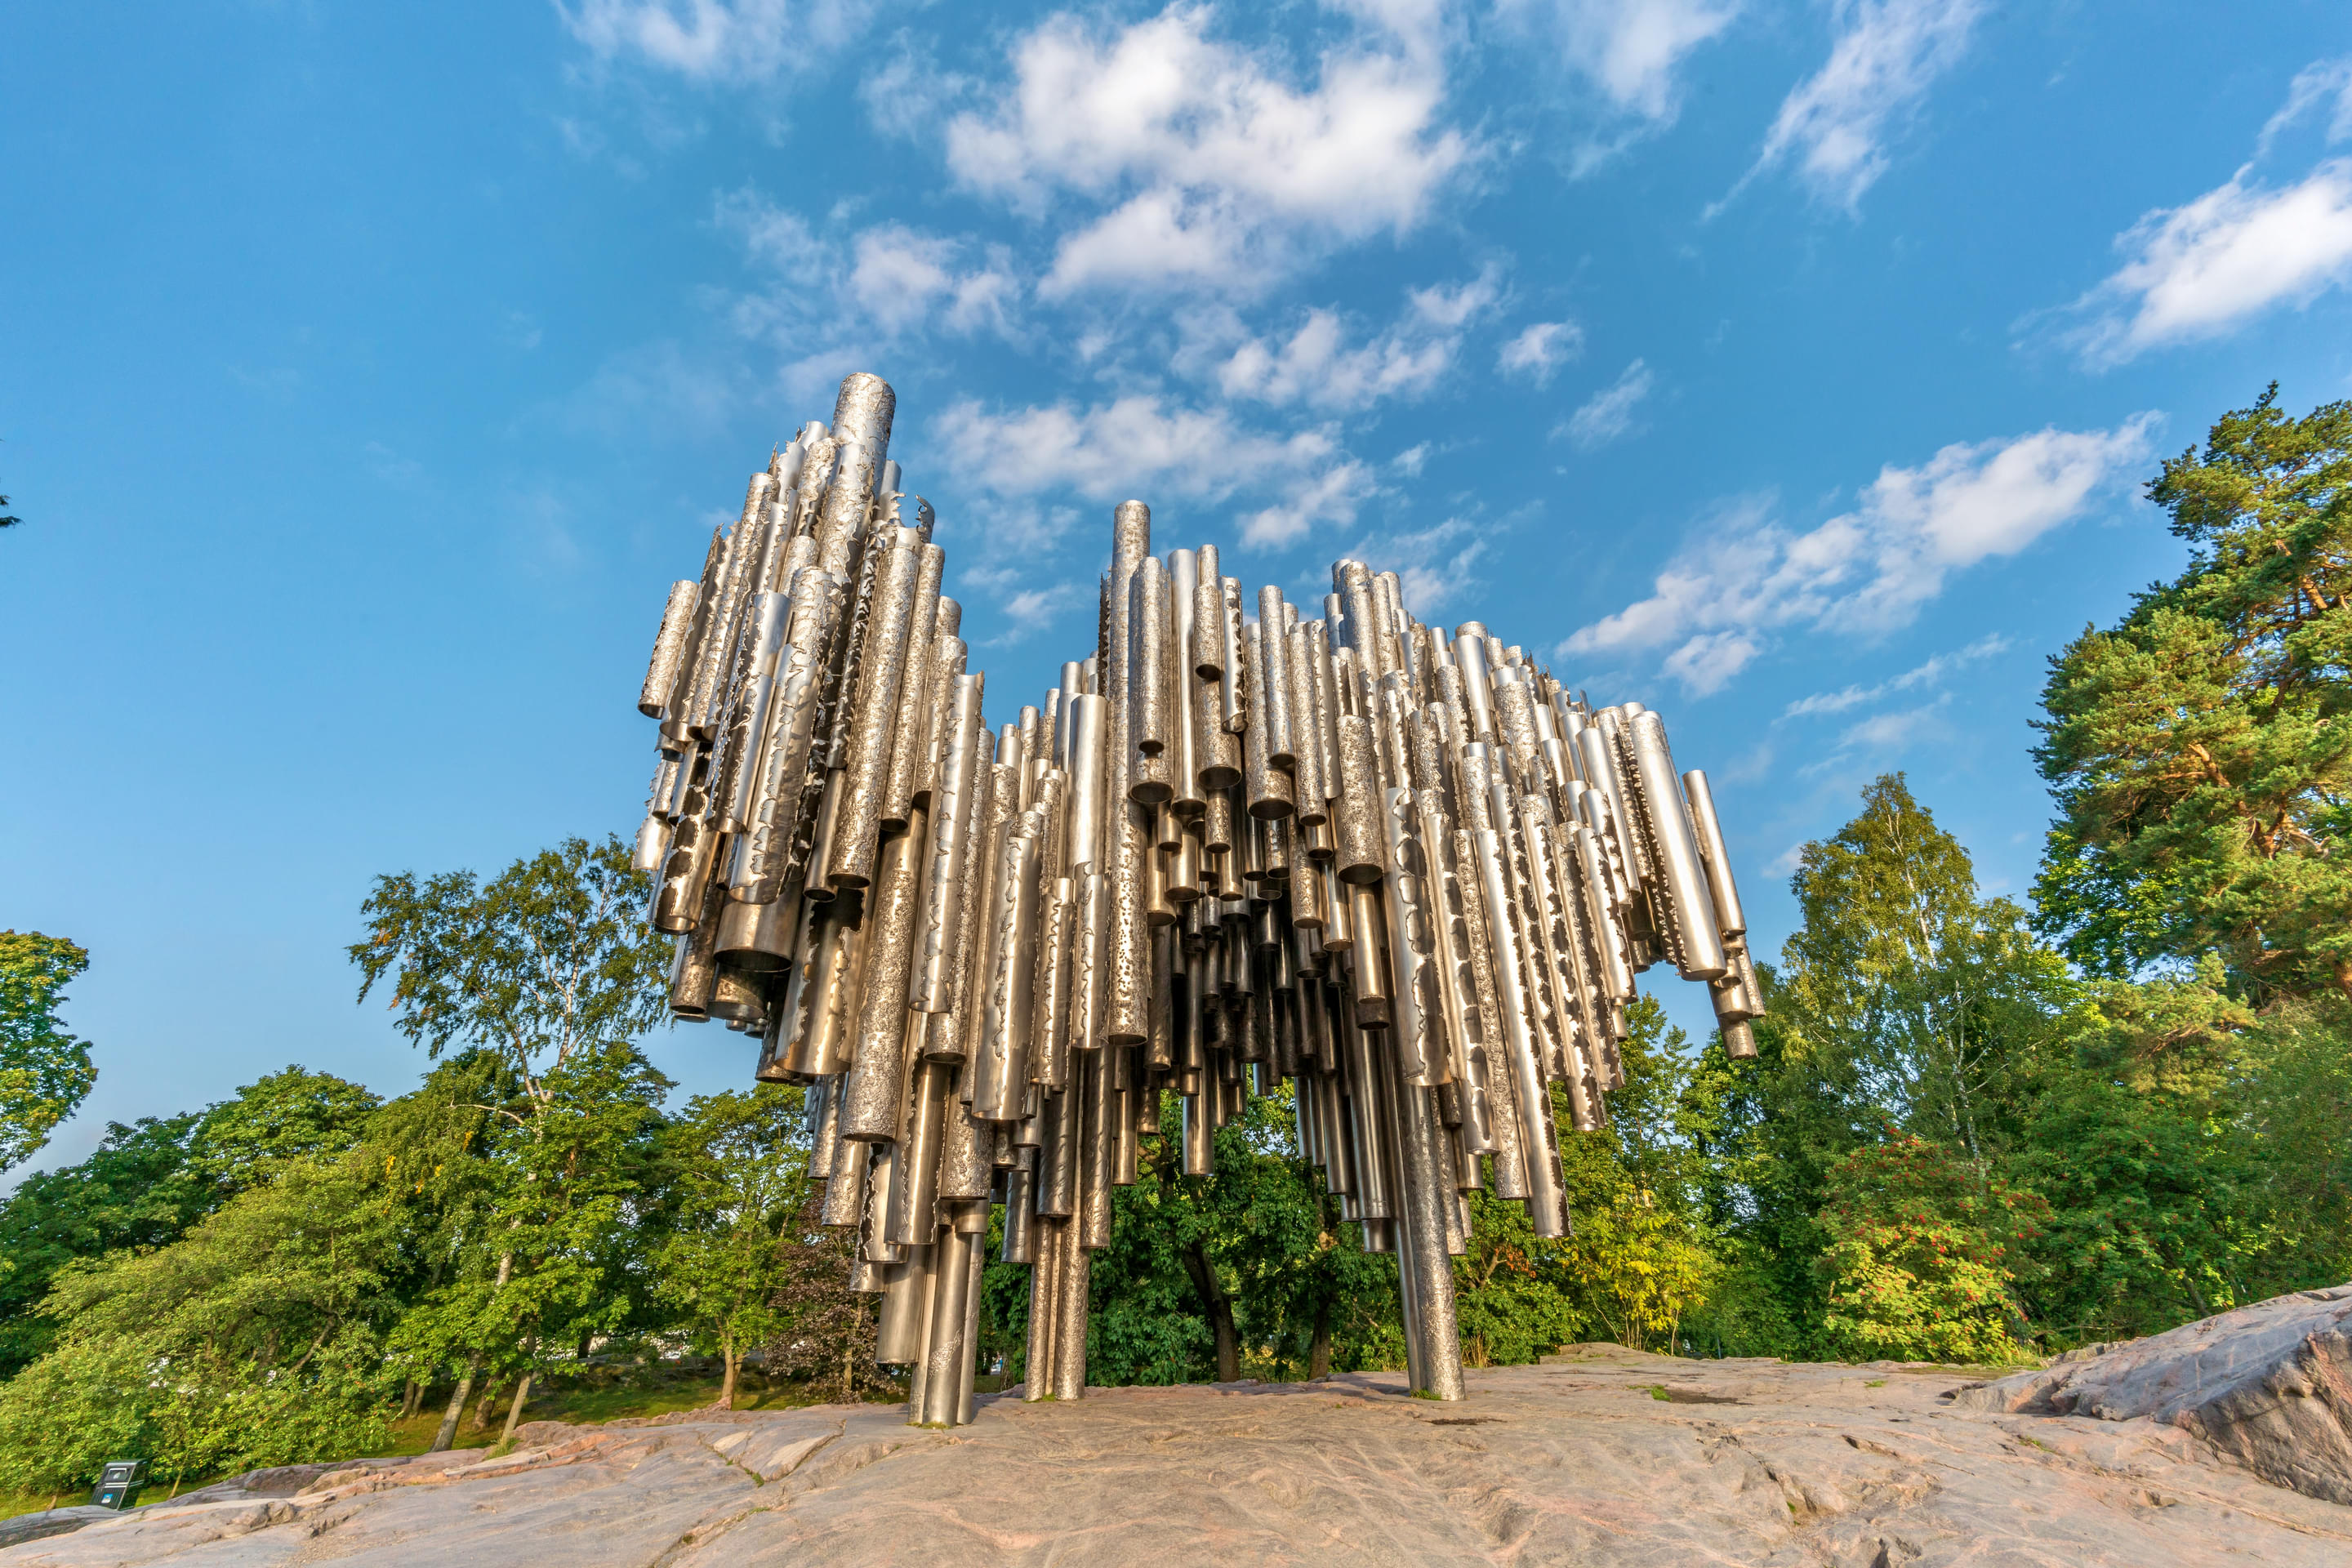 Sibelius Monument Overview